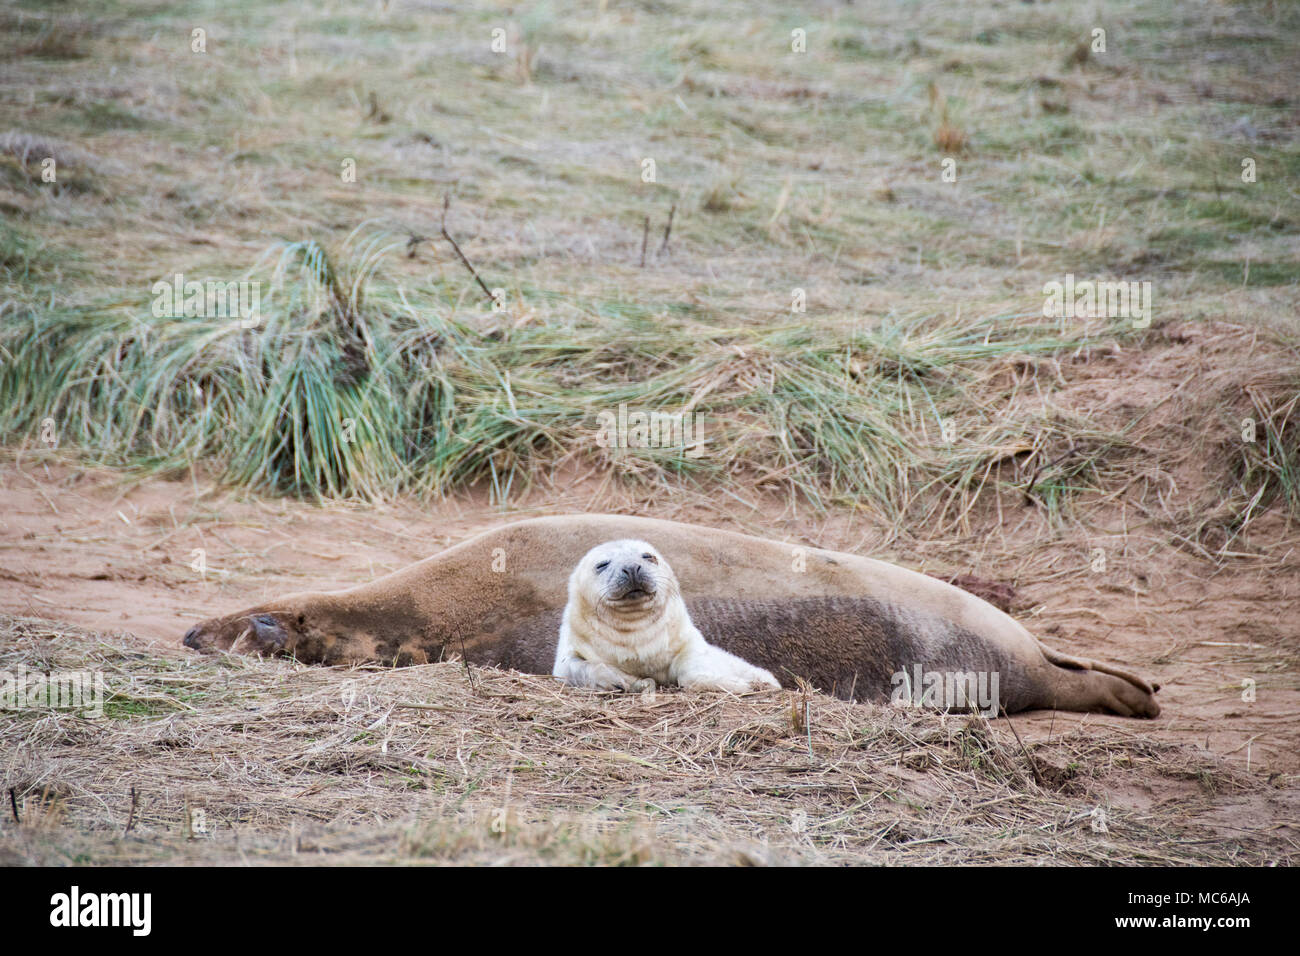 Donna Nook, Lincolnshire, Großbritannien - 15.November: Ein grauer Dichtung an Land kommen für die Geburt Saison liegt auf dem Gras am 15 Nov 2016 Donna Nook Seal Sanctuary Stockfoto